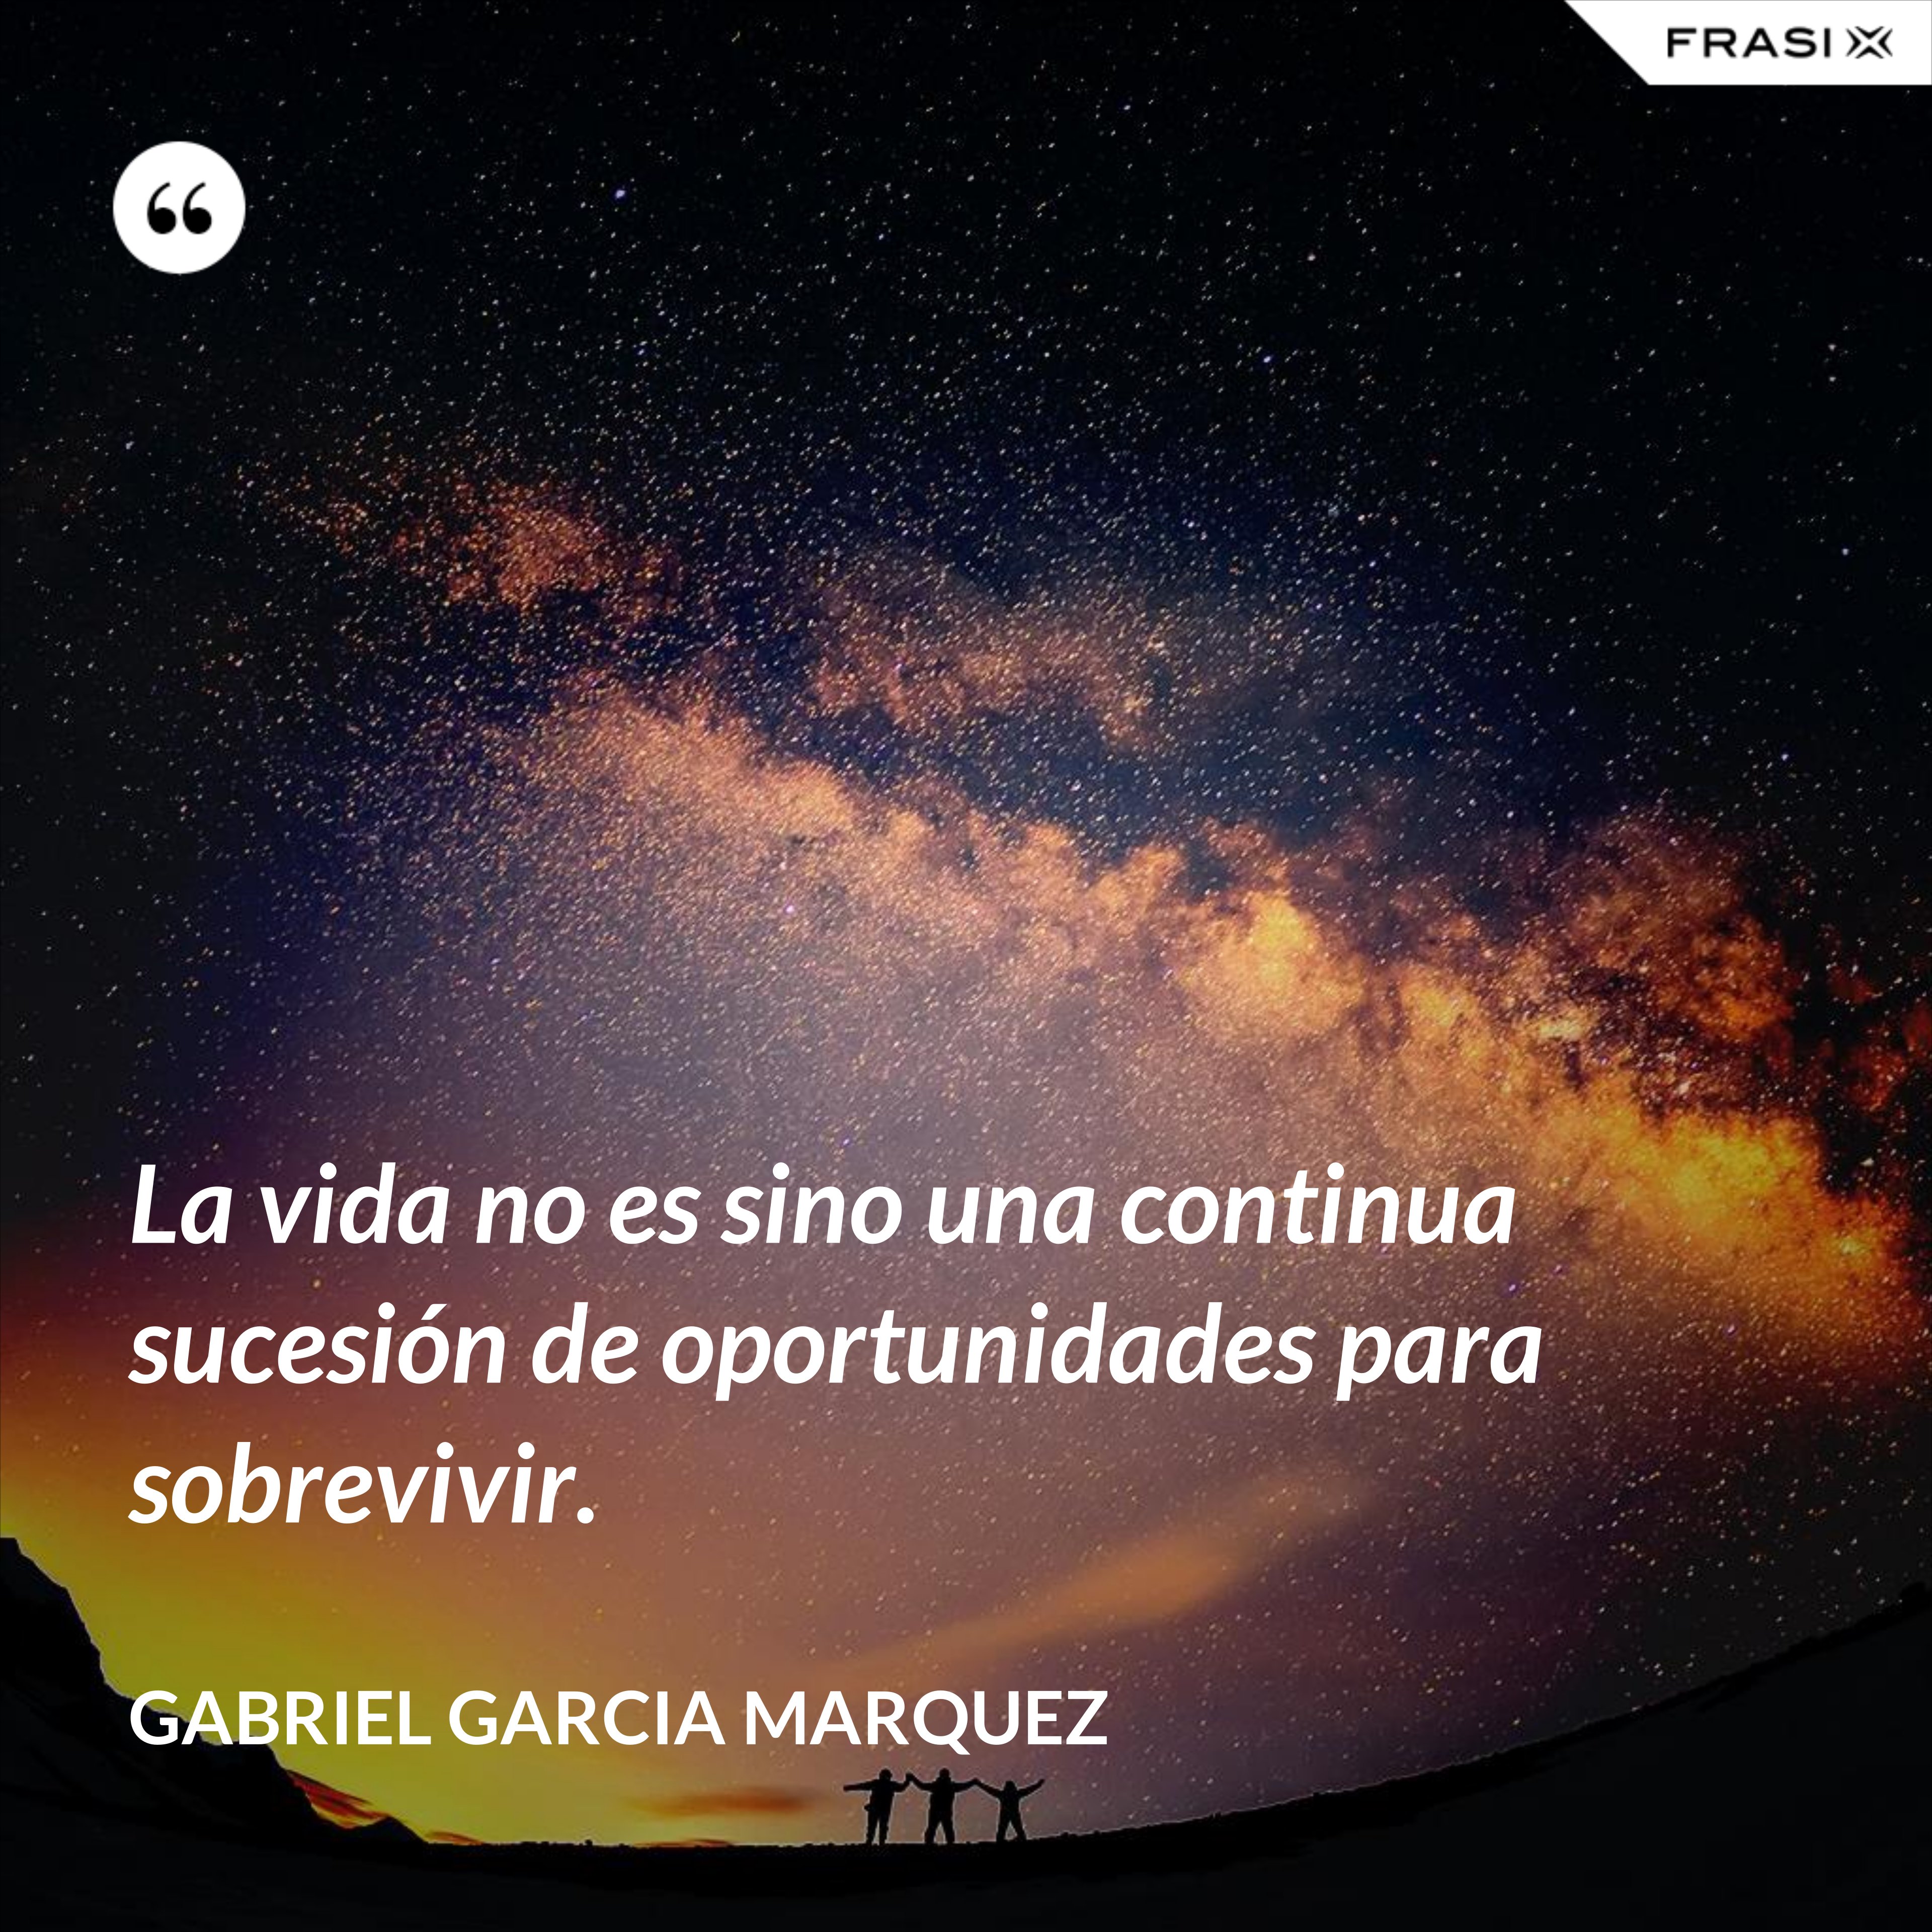 La vida no es sino una continua sucesión de oportunidades para sobrevivir. - Gabriel Garcia Marquez